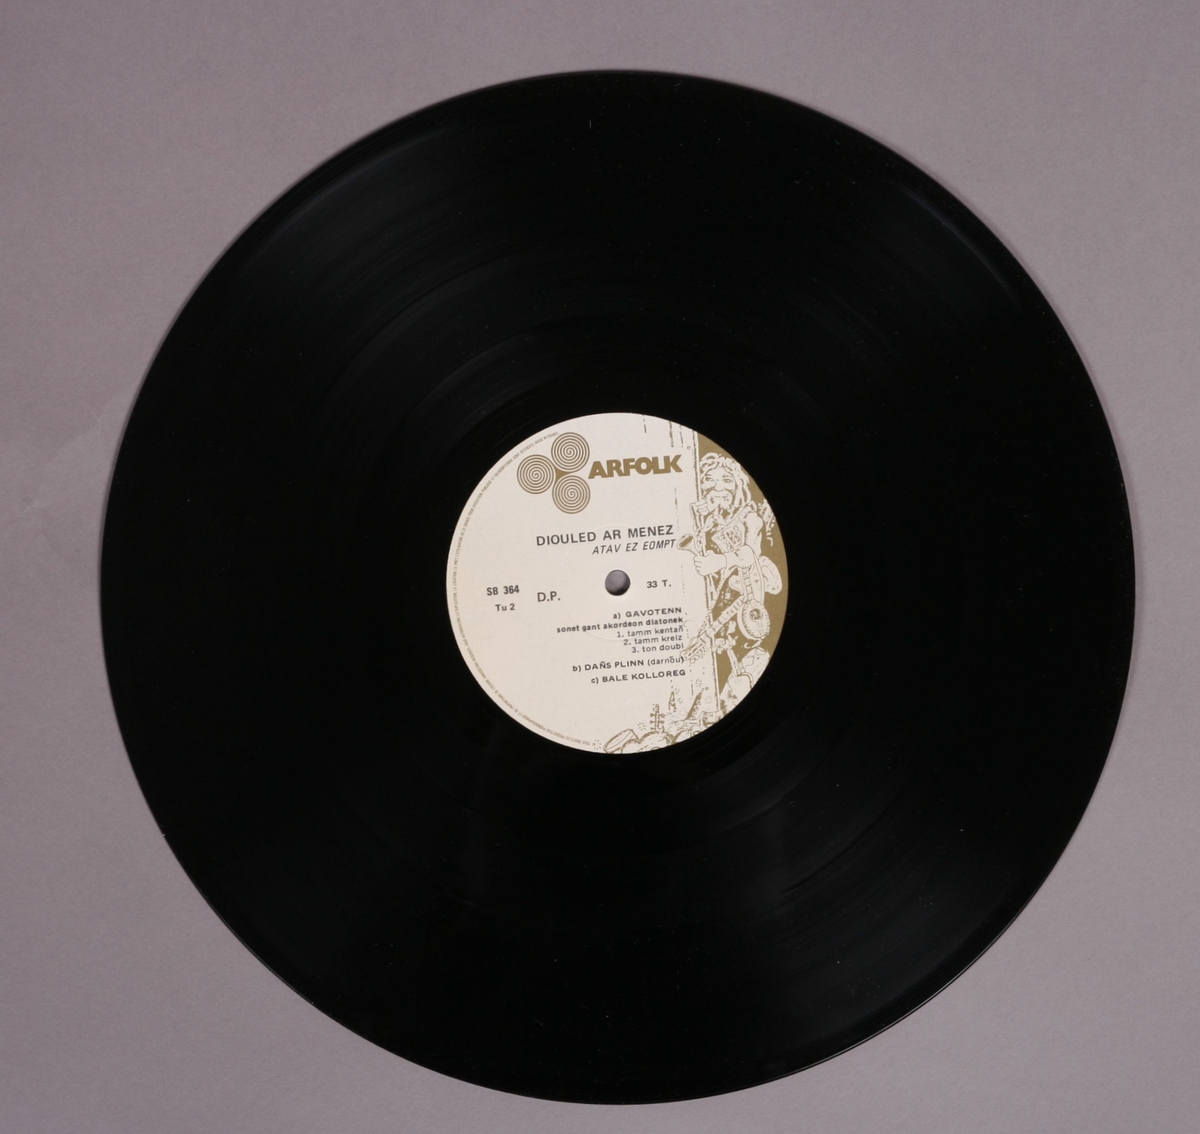 Grammofonplate i svart vinyl og plateomslag i papp. Plata ligger i en plastlomme. Inneholder fire A4-ark med manus (?) merket "bånd-kopi" og "musikk av Bretange" (se bilde).